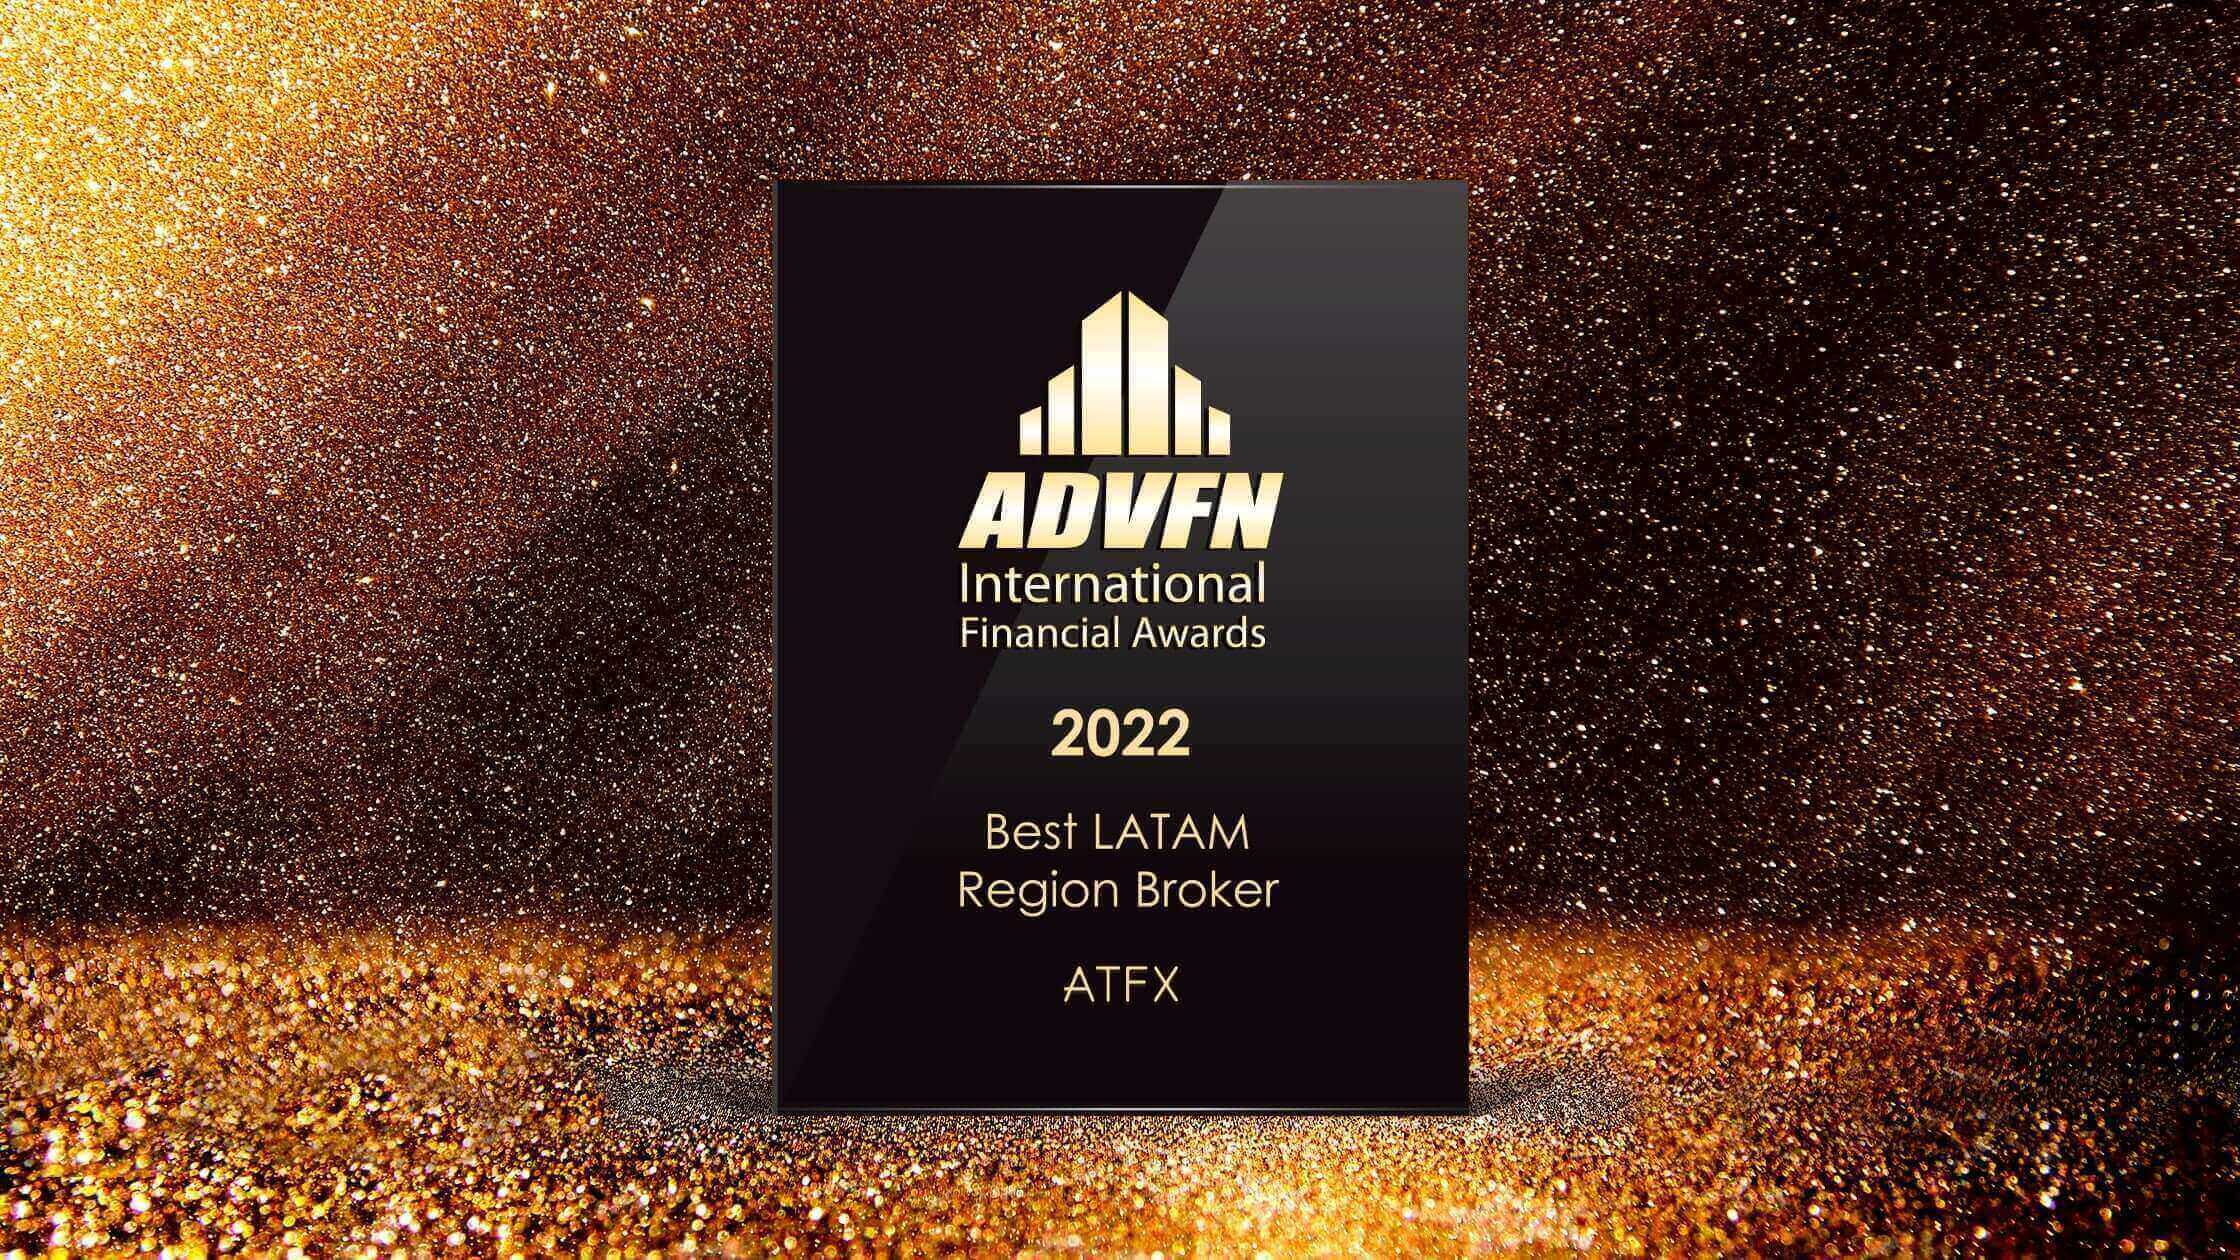 atfx-2022-best-latam-region-broker (1)